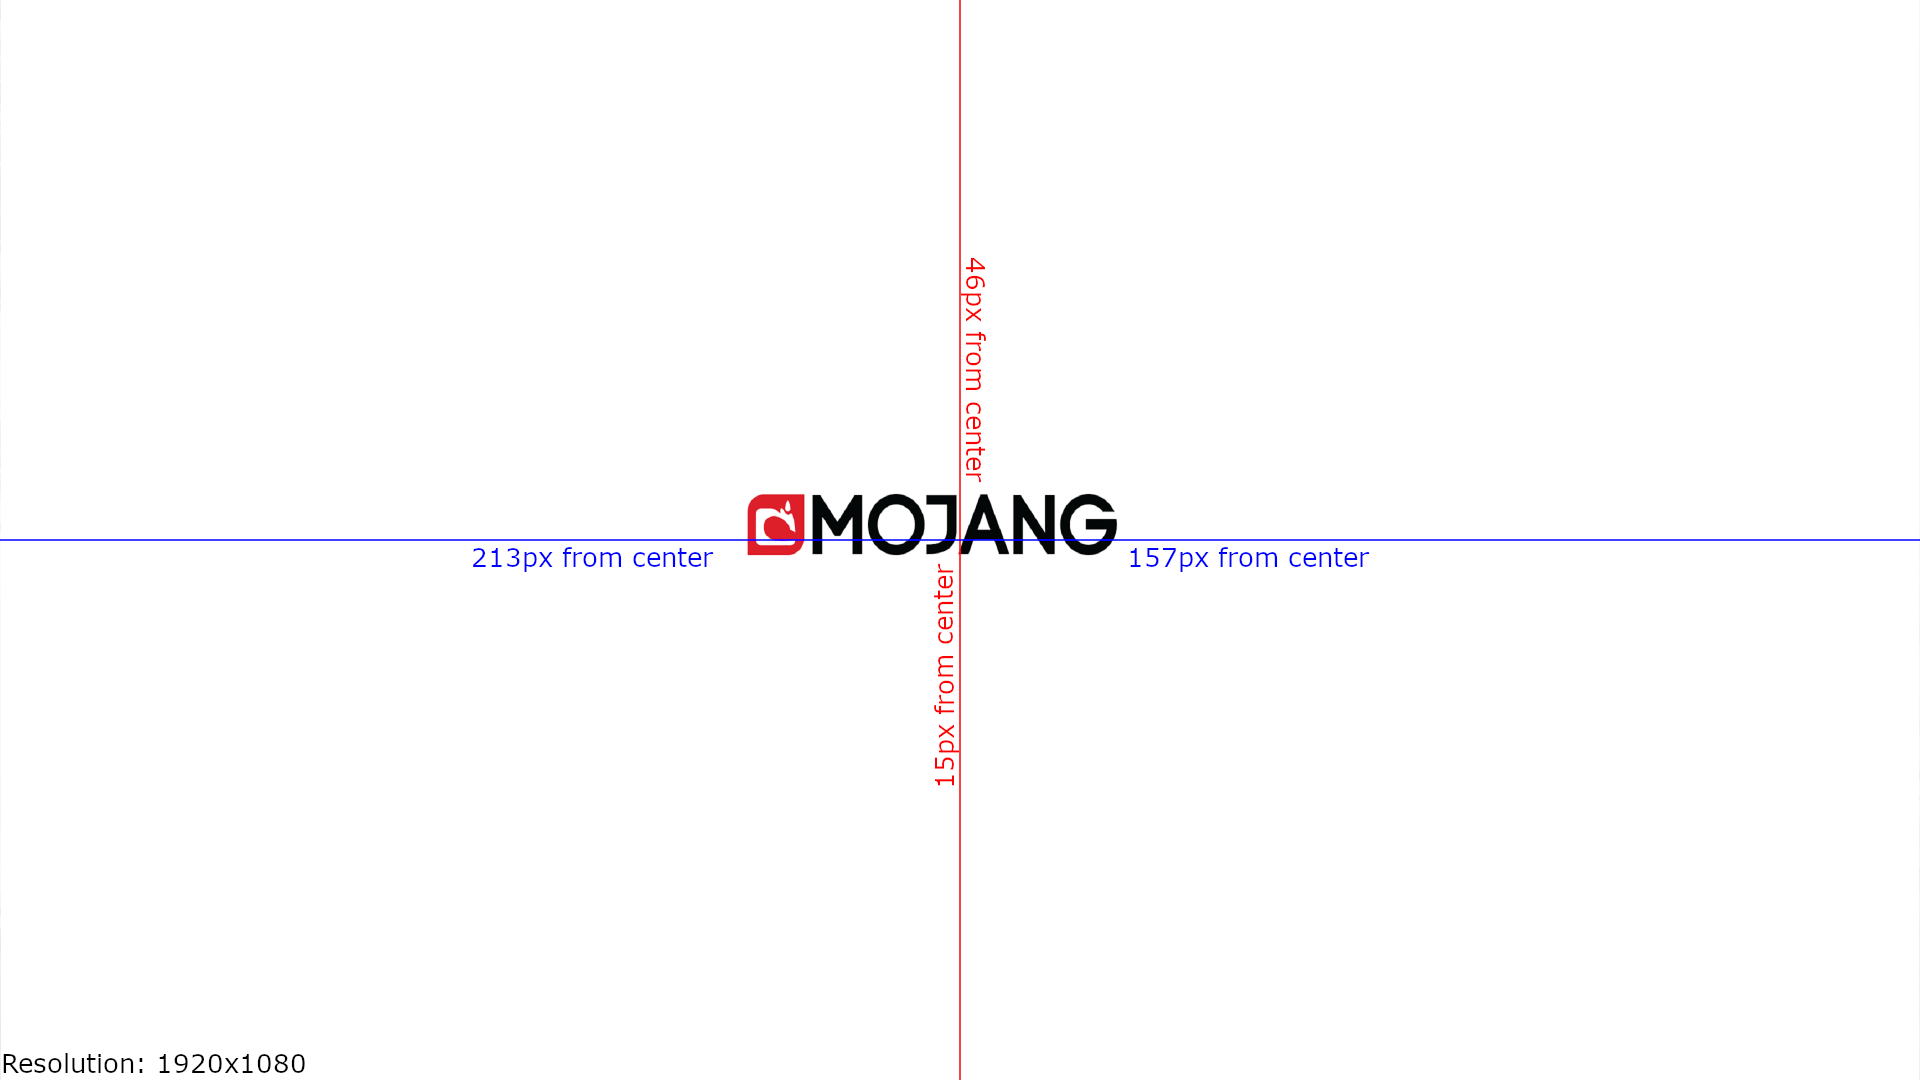 Mojang Logo - MCPE-46141] Mojang logo off-centred and distorted - Jira